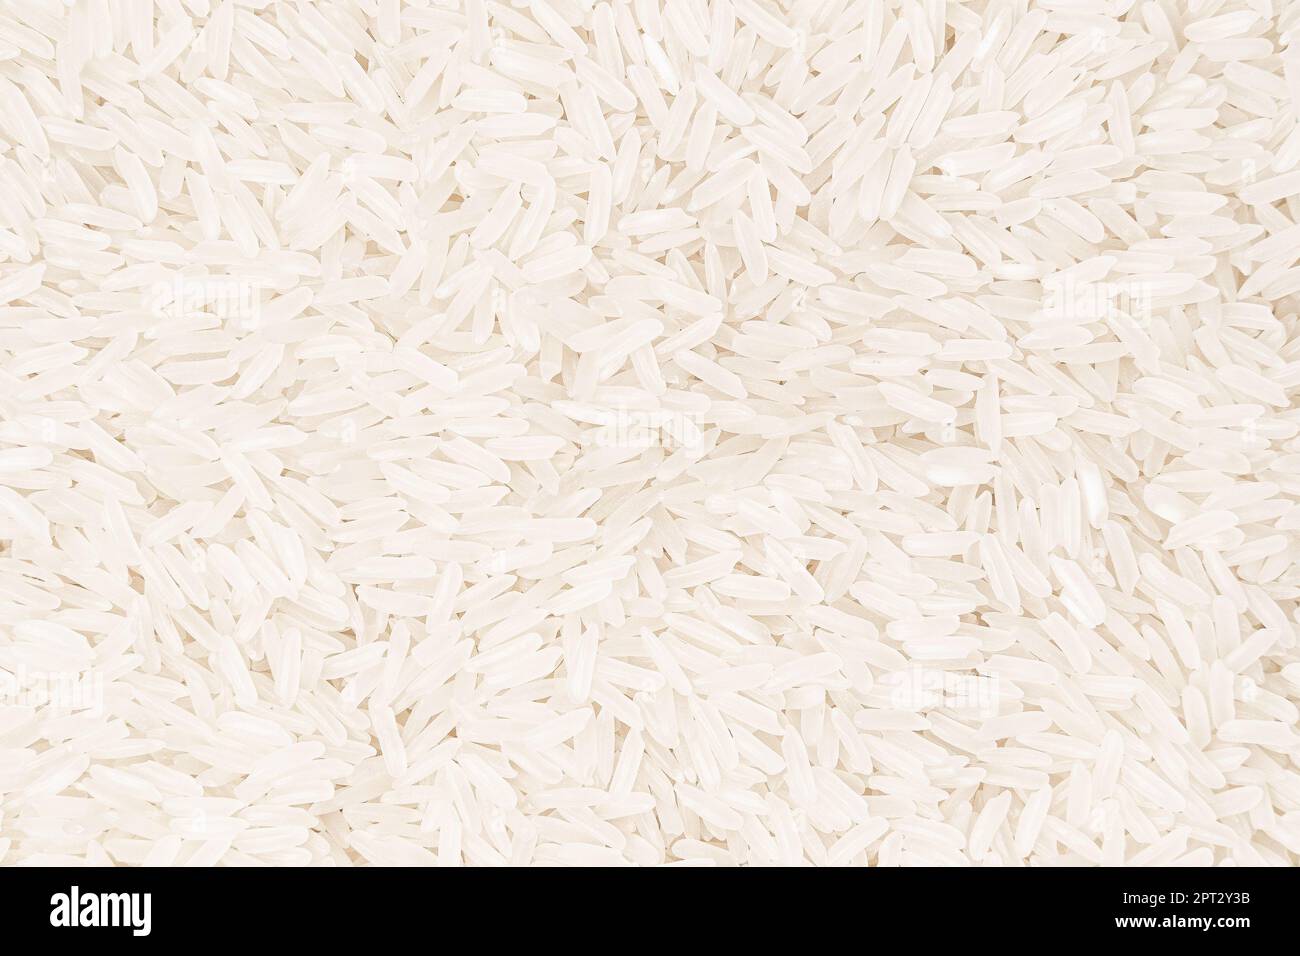 Le grain de riz, également connu comme l'aliment de base le plus consommé au monde, est un ingrédient polyvalent et nutritif qui peut élever n'importe quel plat. Que vous soyez cr Banque D'Images